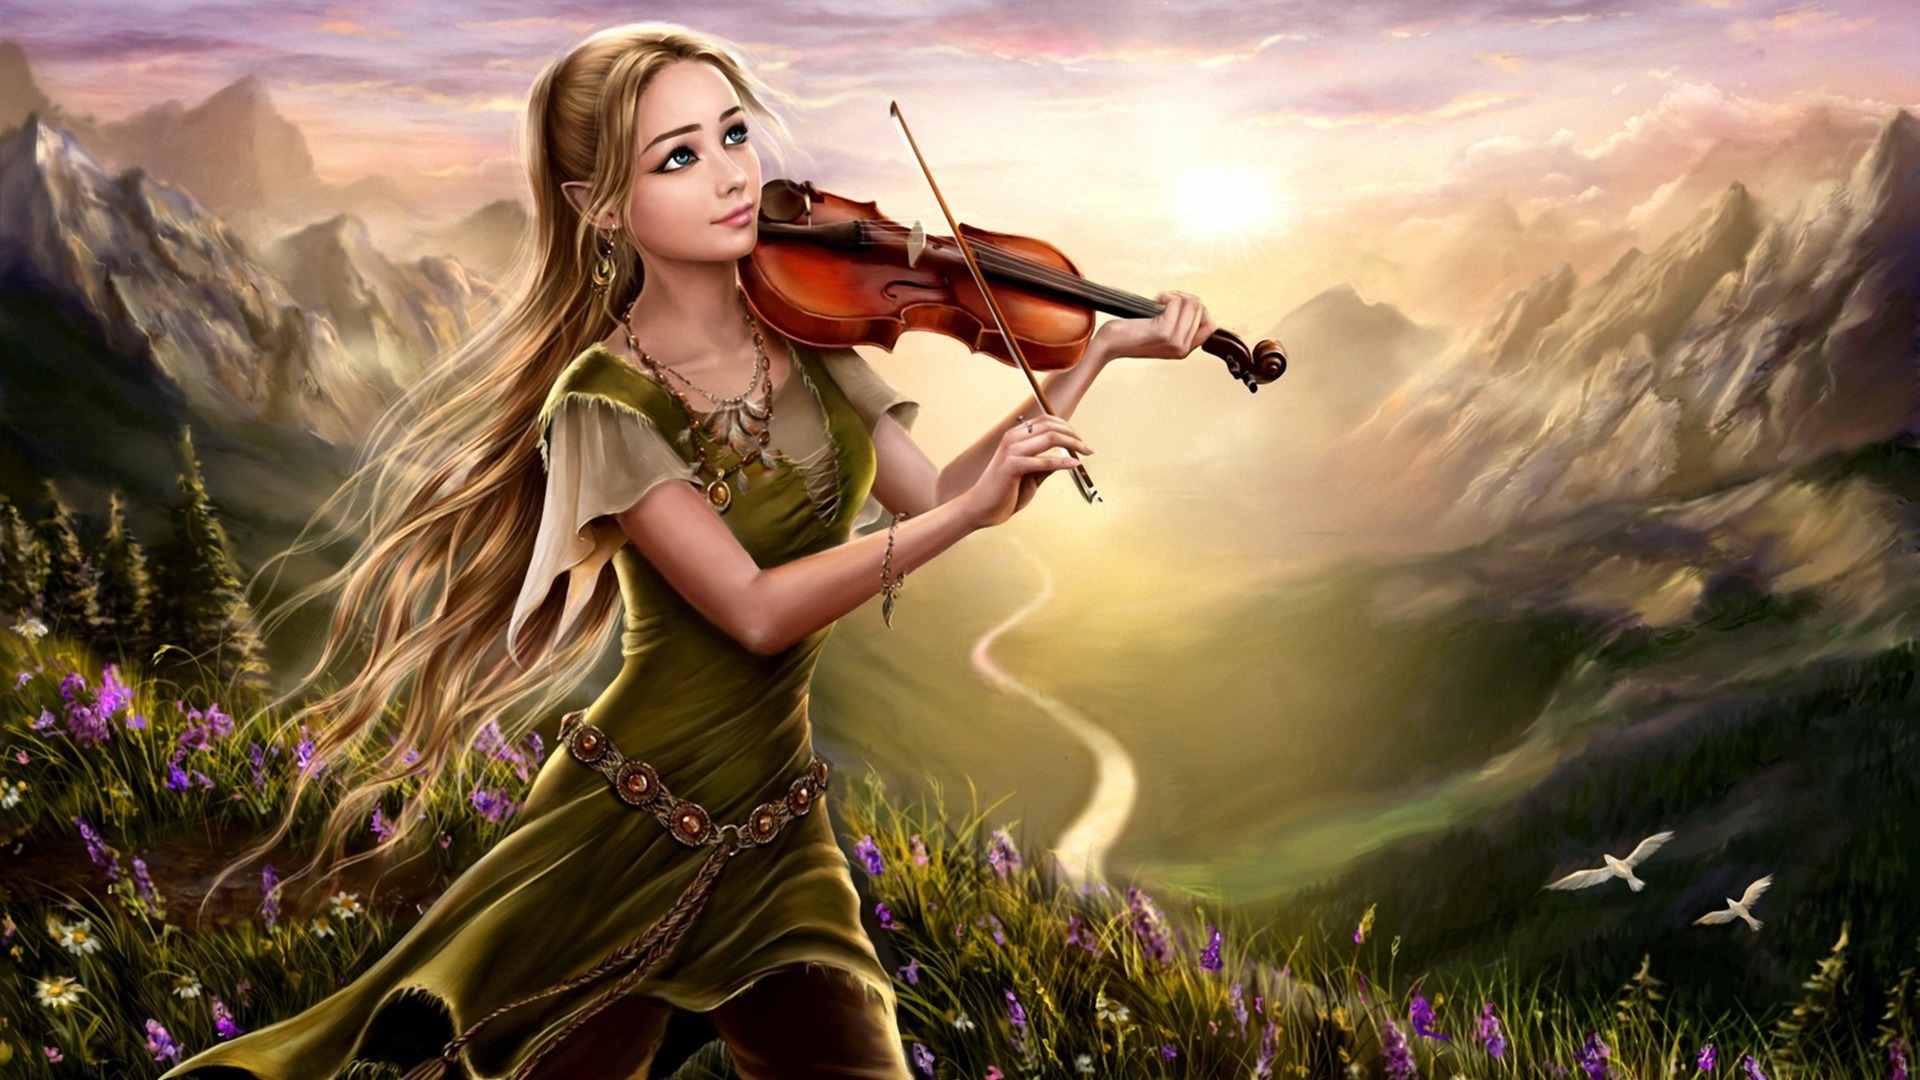 幻想,女孩,长发,小提琴,高山风景,唯美桌面壁纸